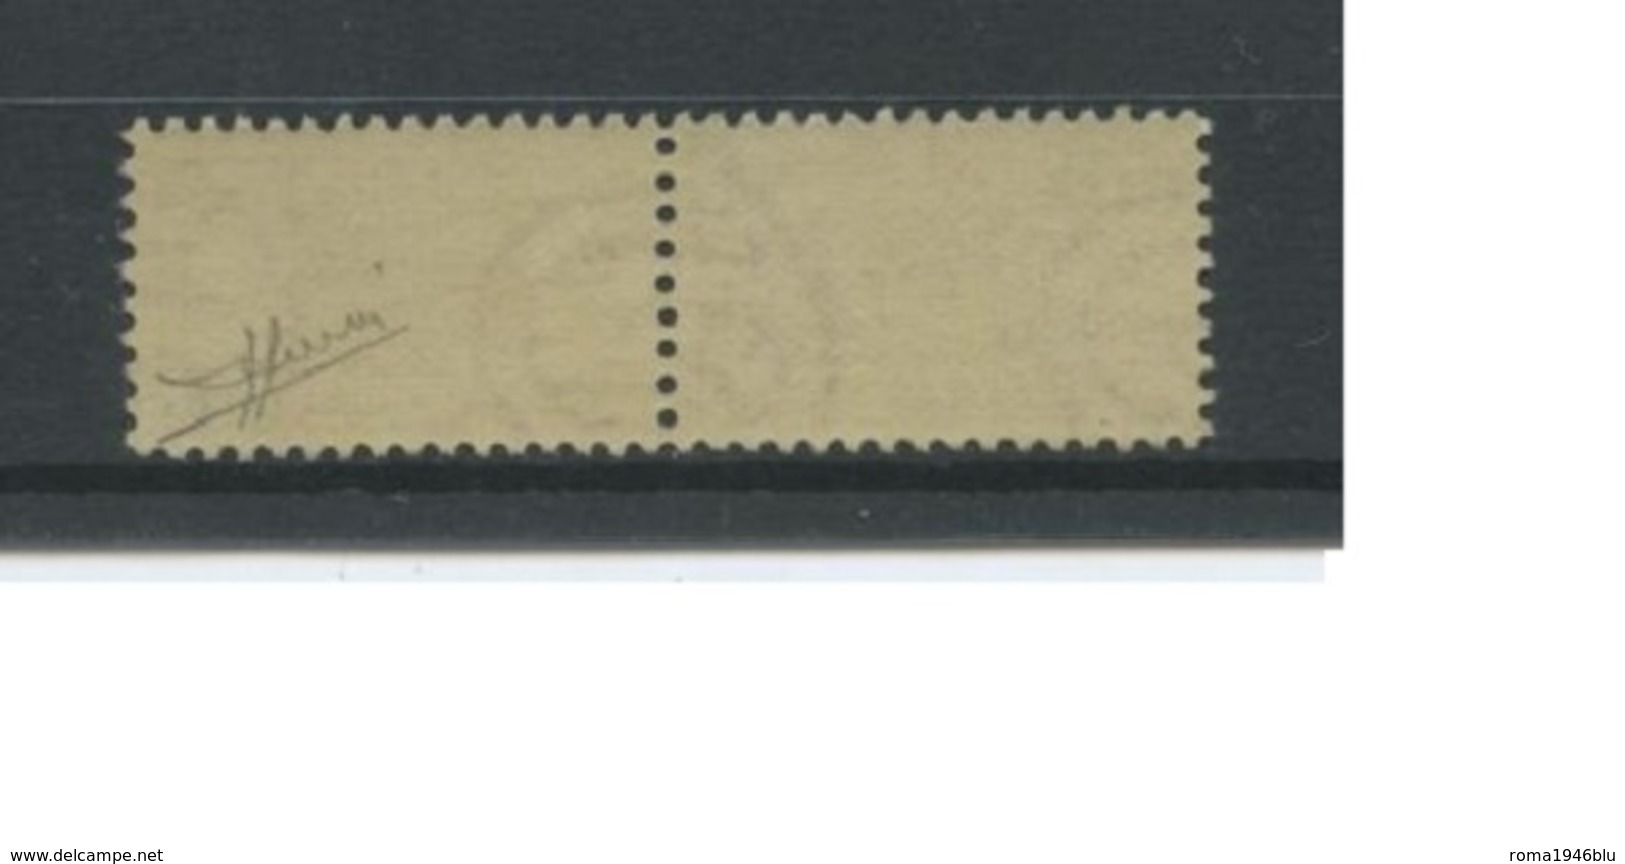 REPUBBLICA 1948 PACCHI POSTALI 300 LIRE ** MNH CENTRATISSIMO LUSSO C. SORANI - Postpaketten